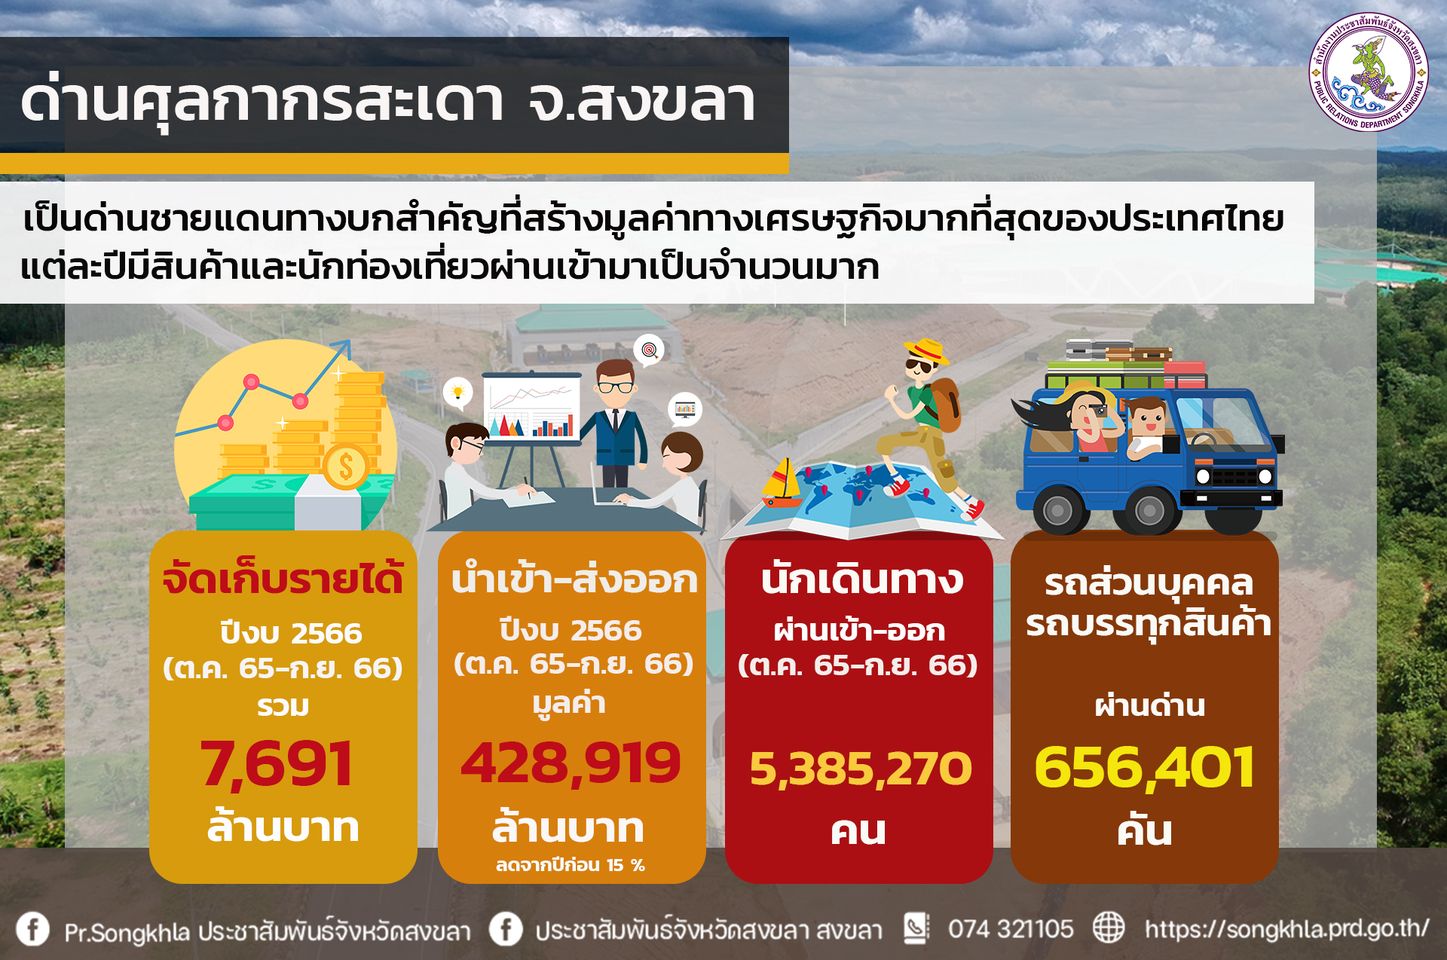 รู้หรือไม่ !! ด่านศุลกากรสะเดา จังหวัดสงขลา เป็นด่านชายแดนทางบกสำคัญที่สร้างมูลค่าทางเศรษฐกิจมากที่สุดของประเทศไทย